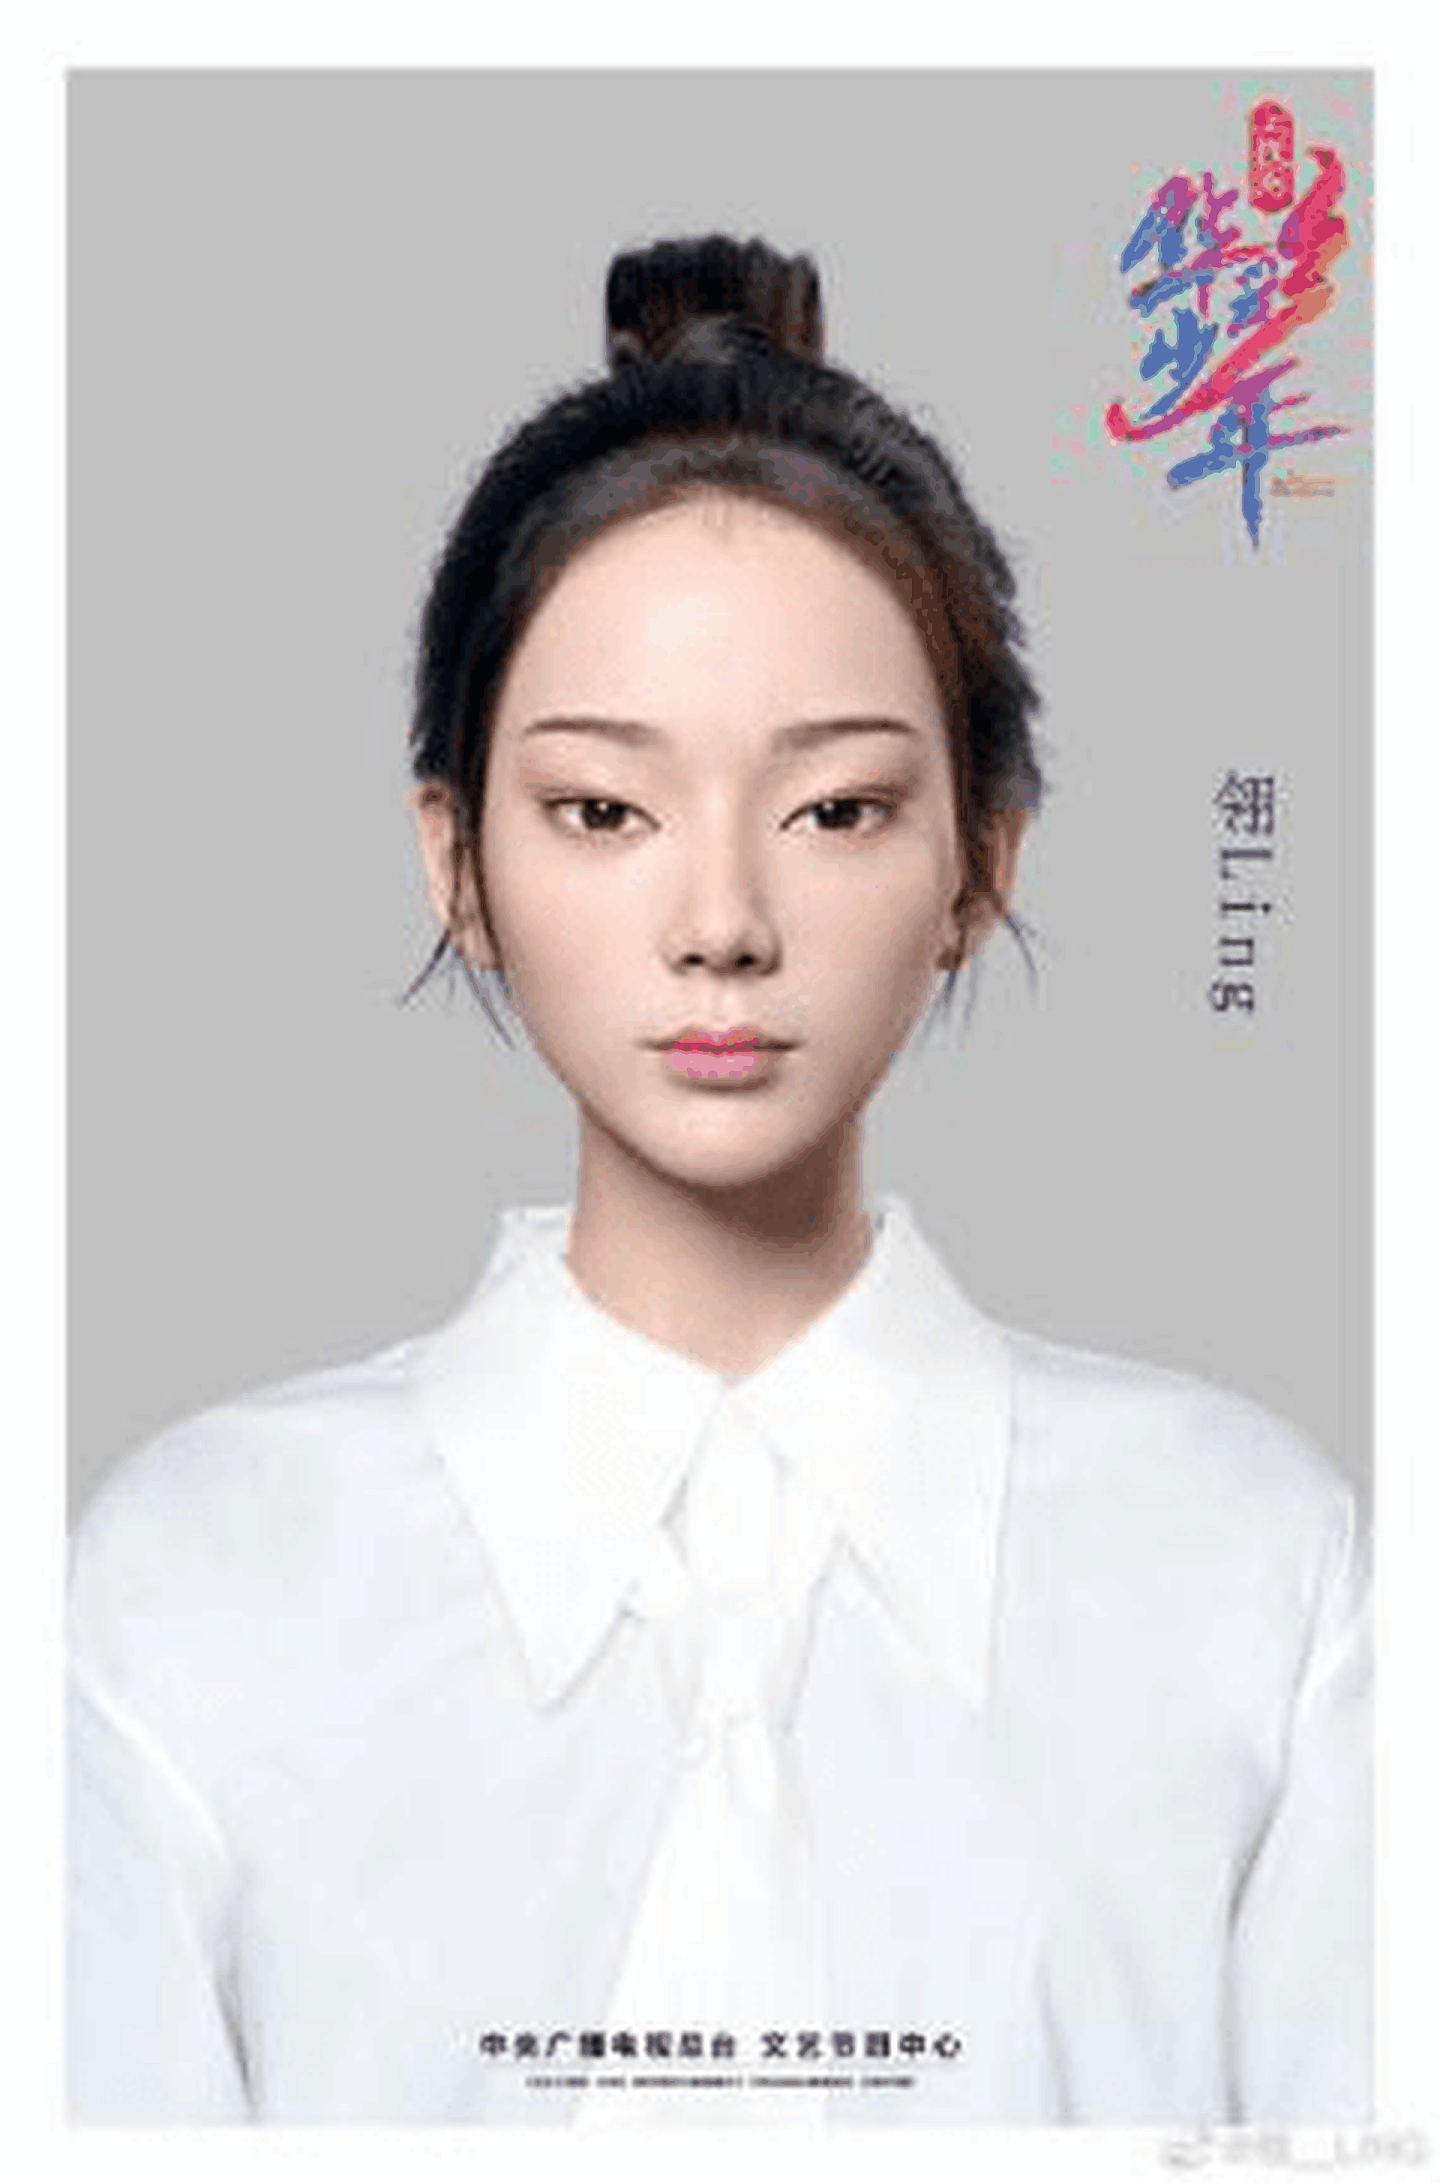 中国市场推出的虚拟偶像。（中国央视节目海报）